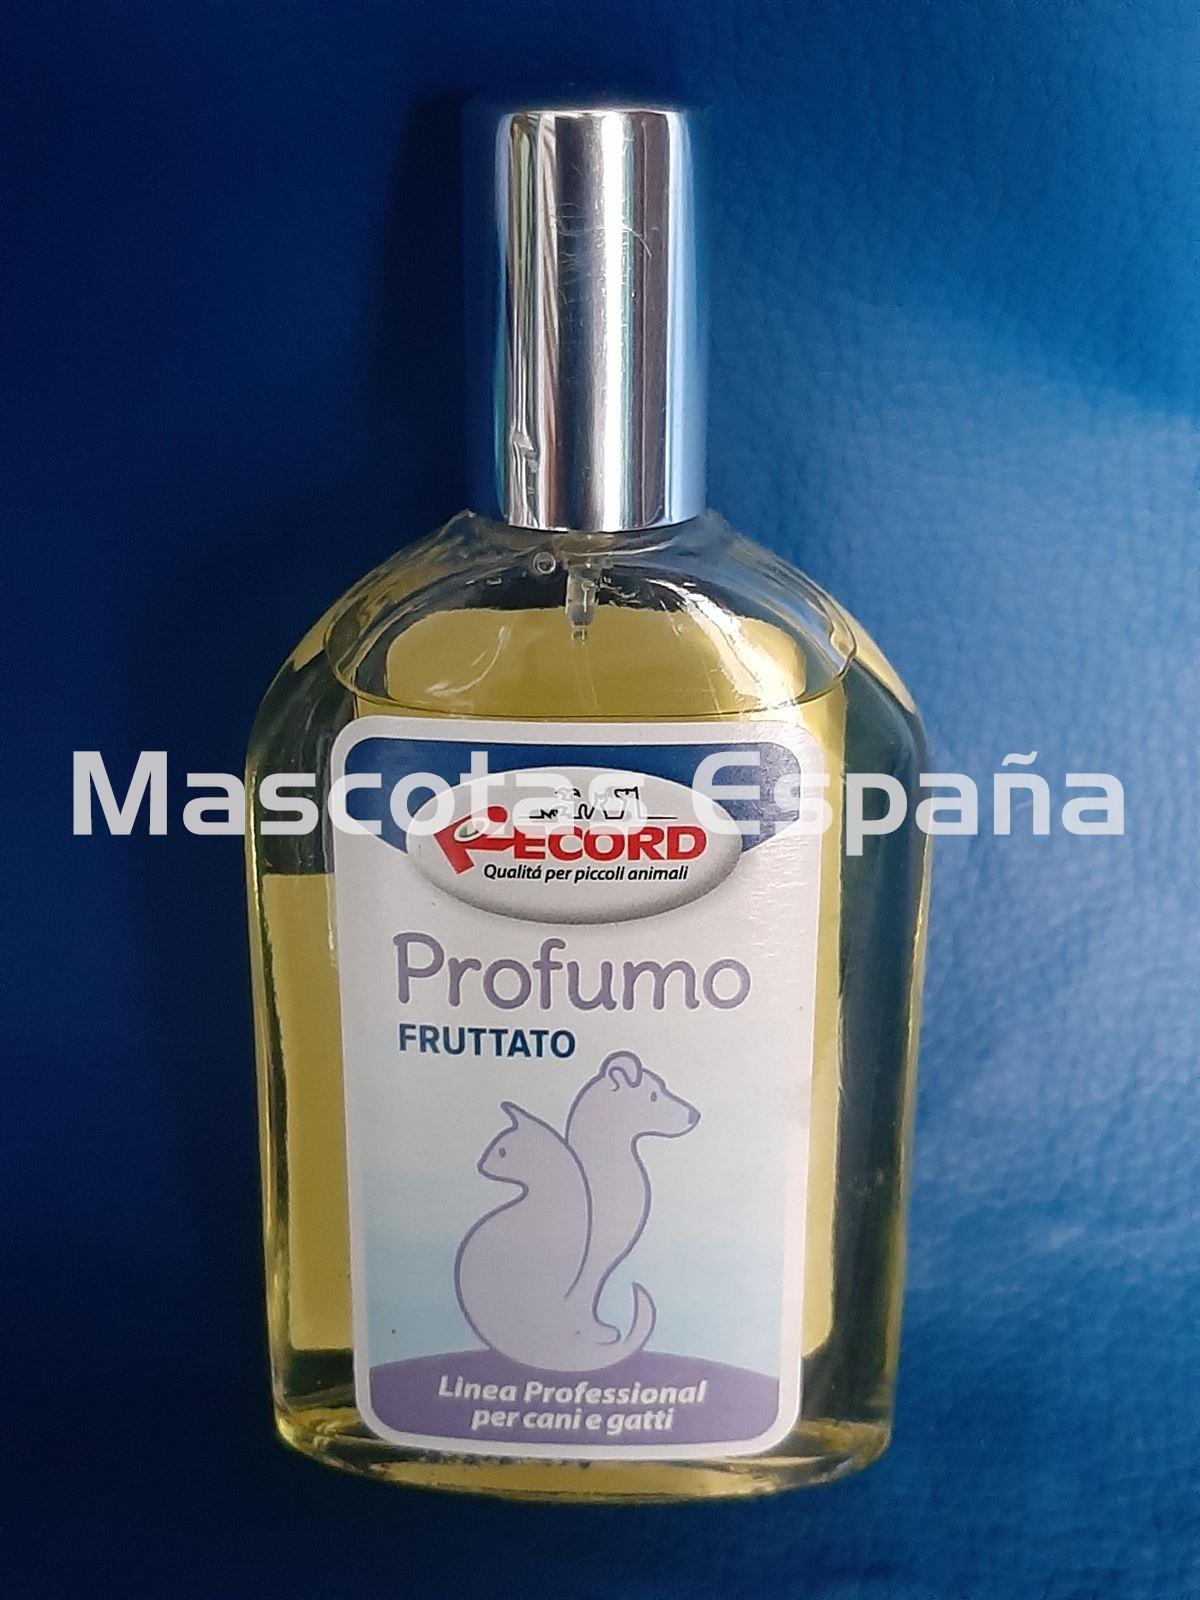 RECORD Perfume Fruttato 100ml - Imagen 1